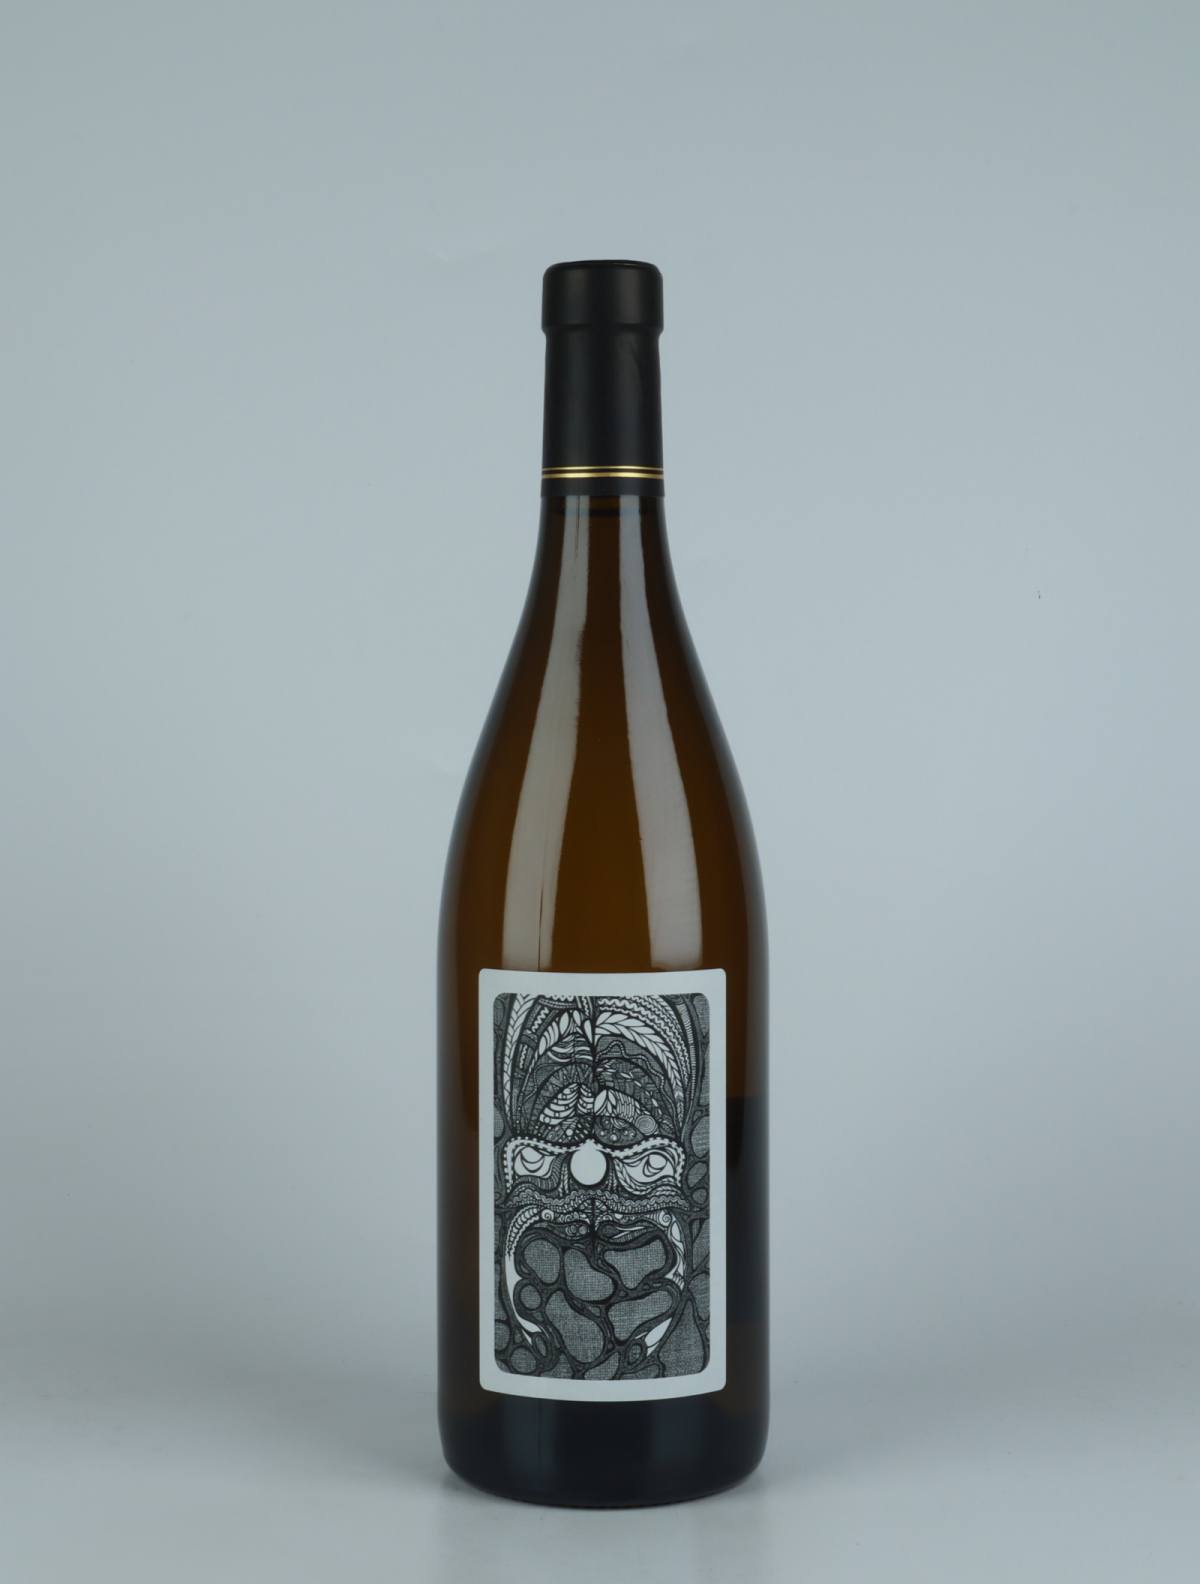 A bottle 2018 Autochtone White wine from Julien Courtois, Loire in France